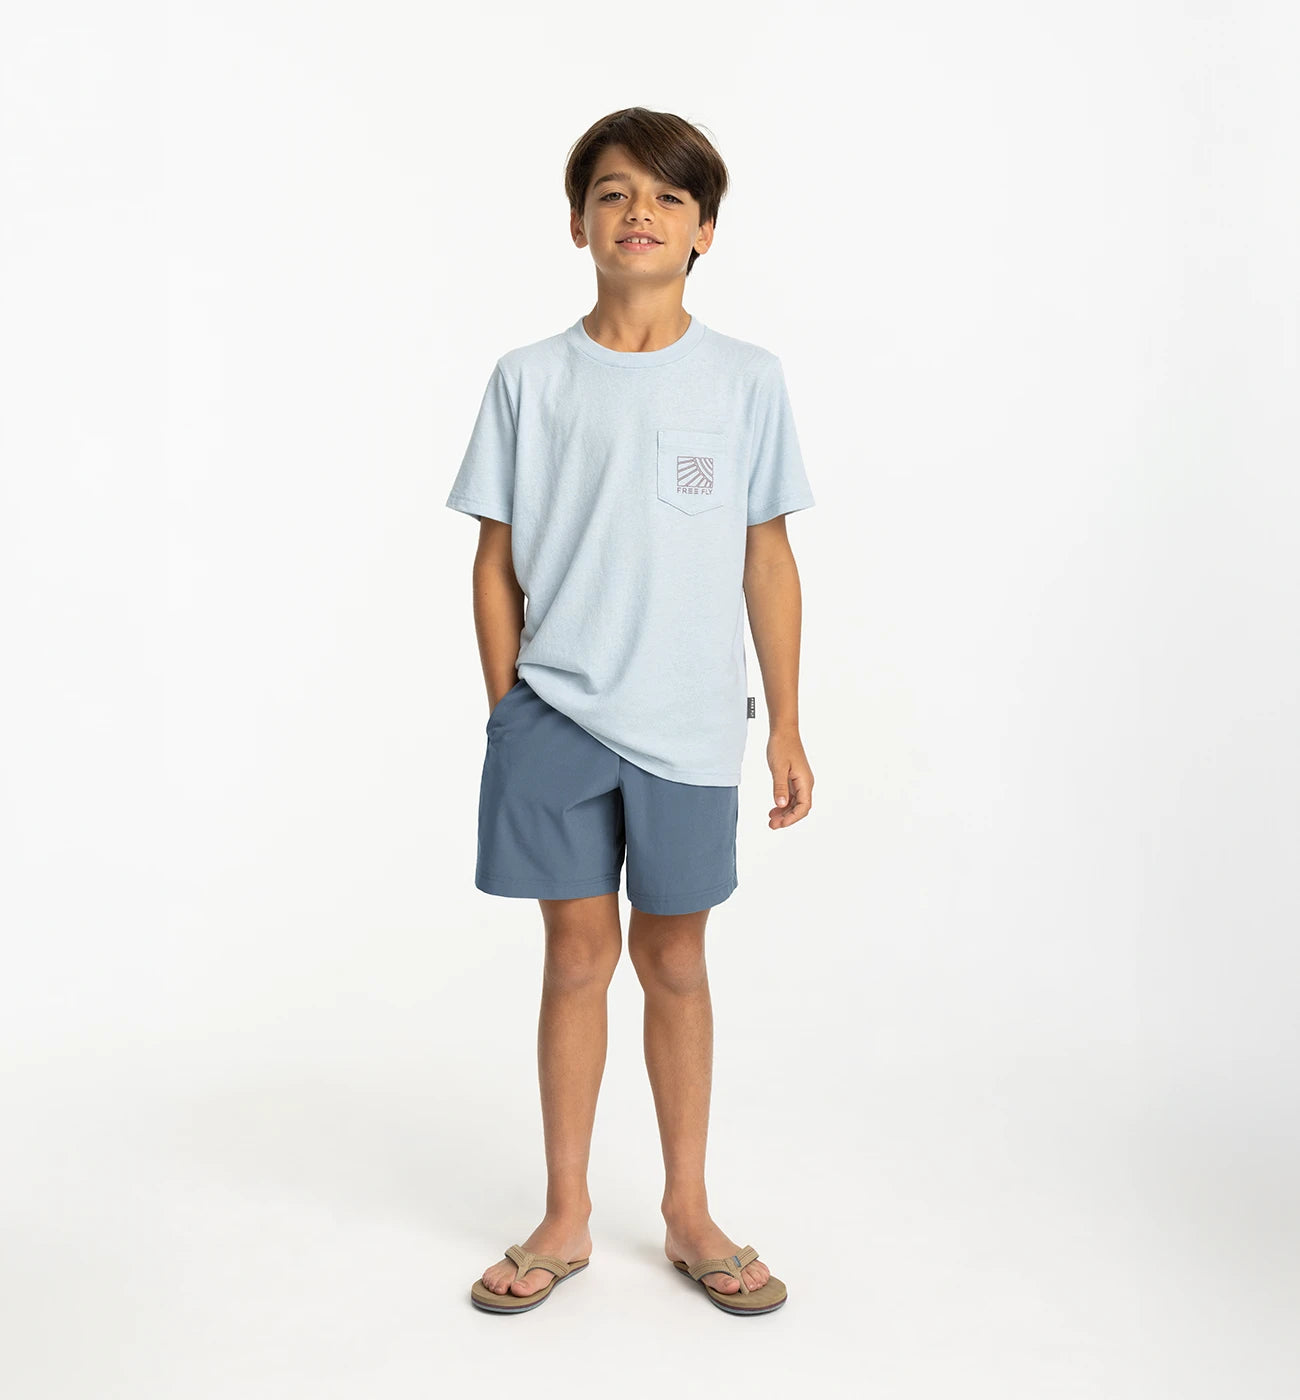 Boy Shorts - Basics And Fashion